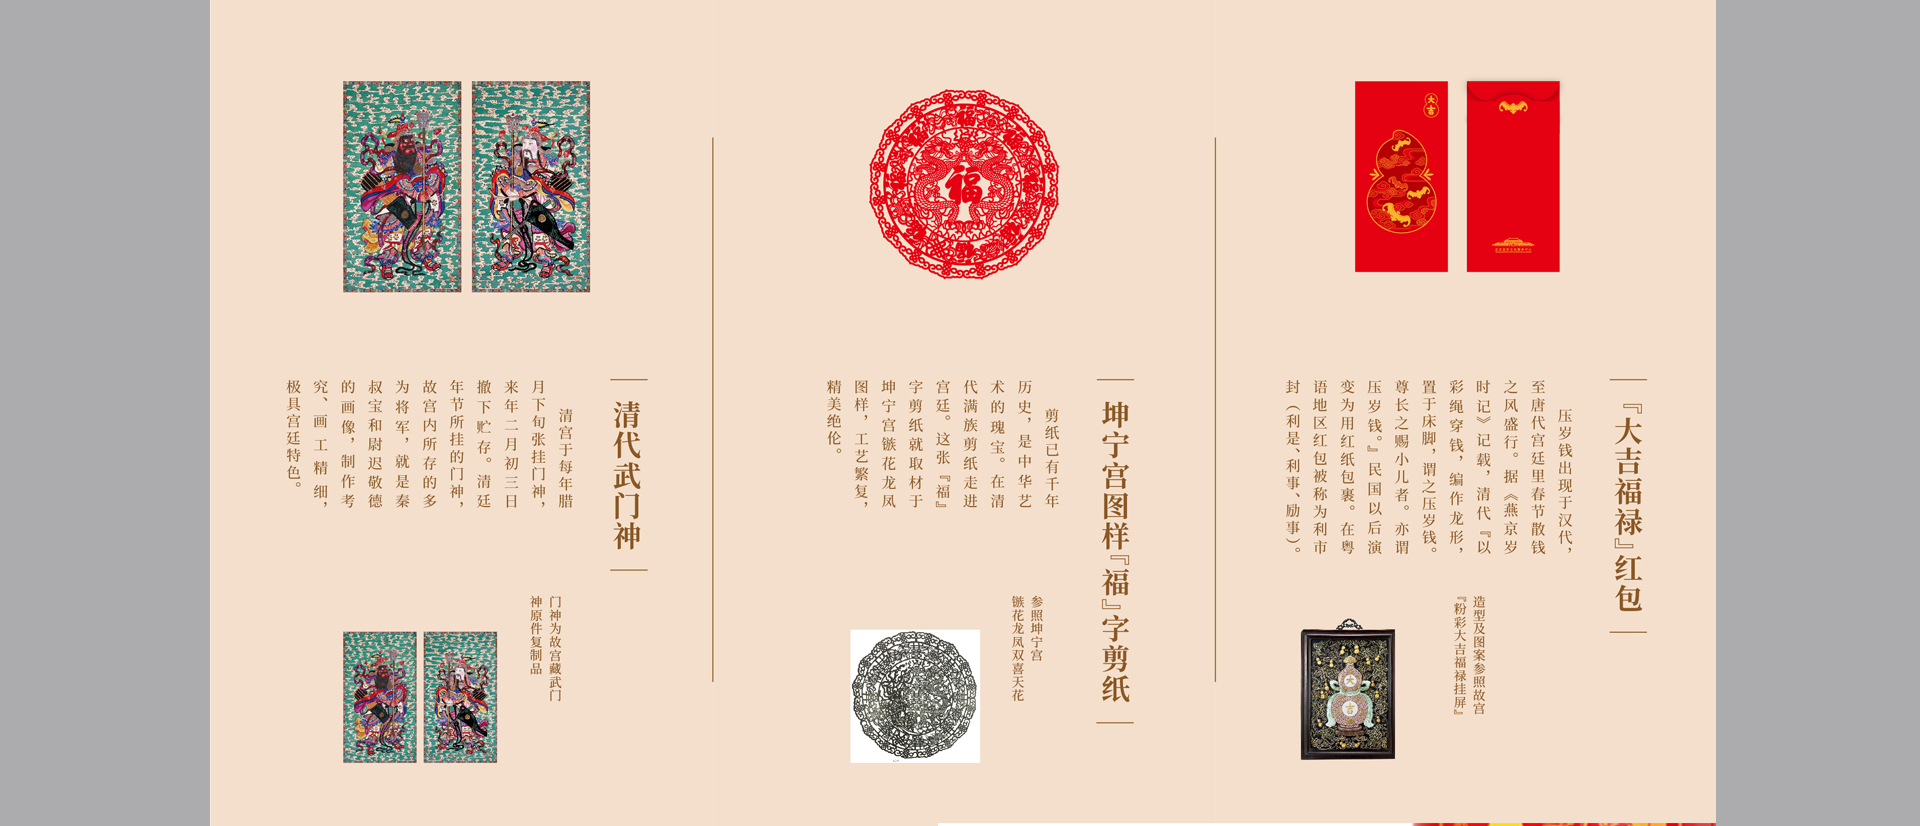 故宫文创 - 北京logo标志vi包装设计-博物馆故宫文创